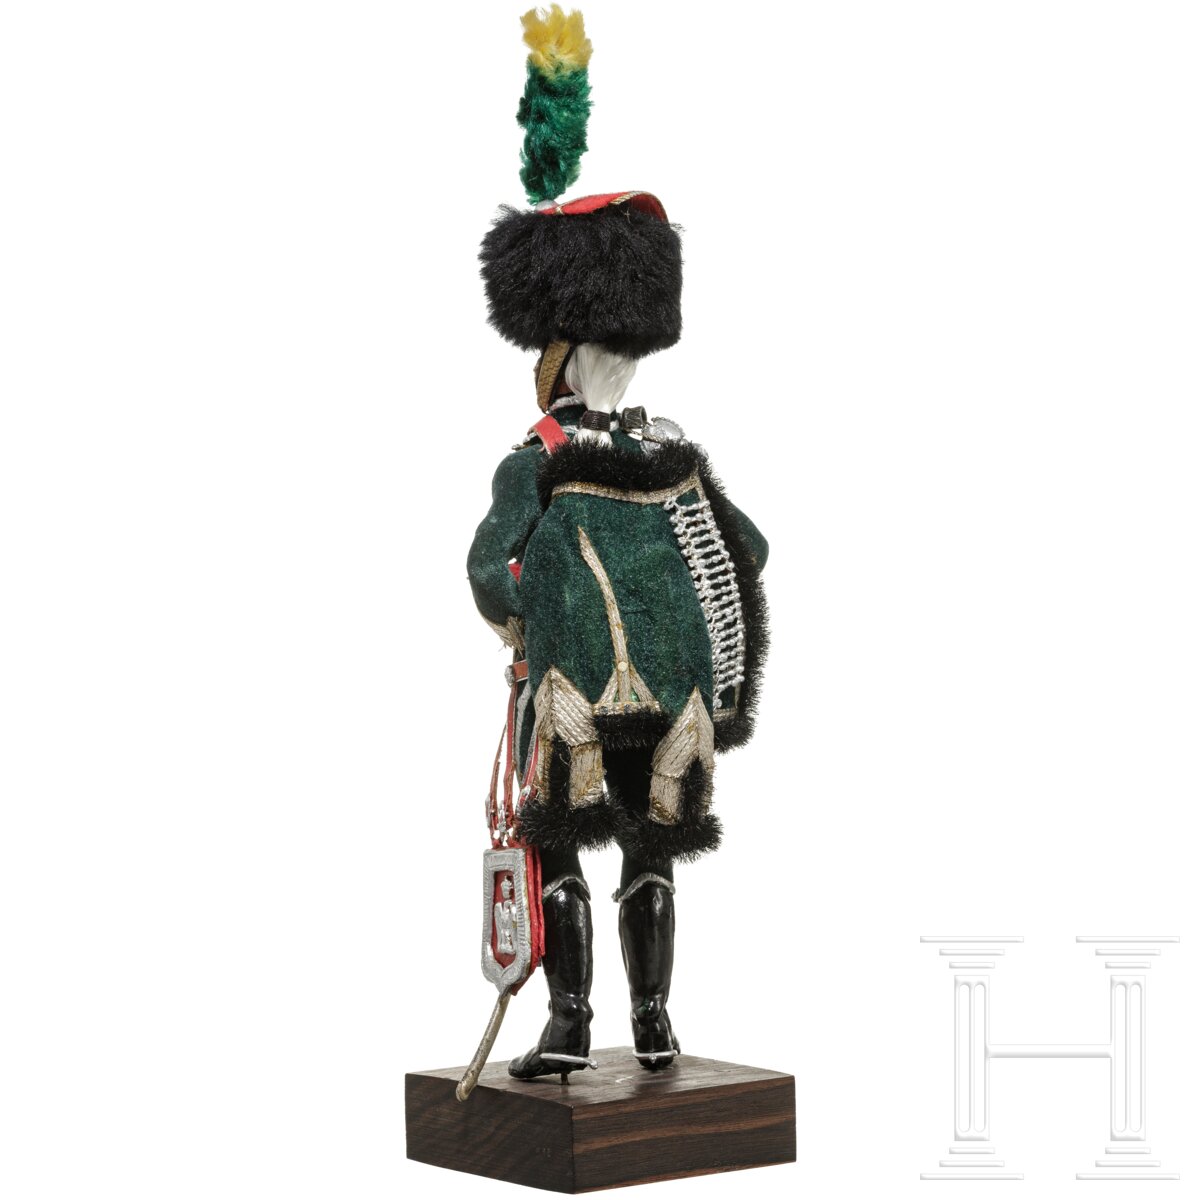 Offizier der Gardes d'honneur um 1810 - Uniformfigur von Marcel Riffet, 20. Jhdt. - Image 4 of 6